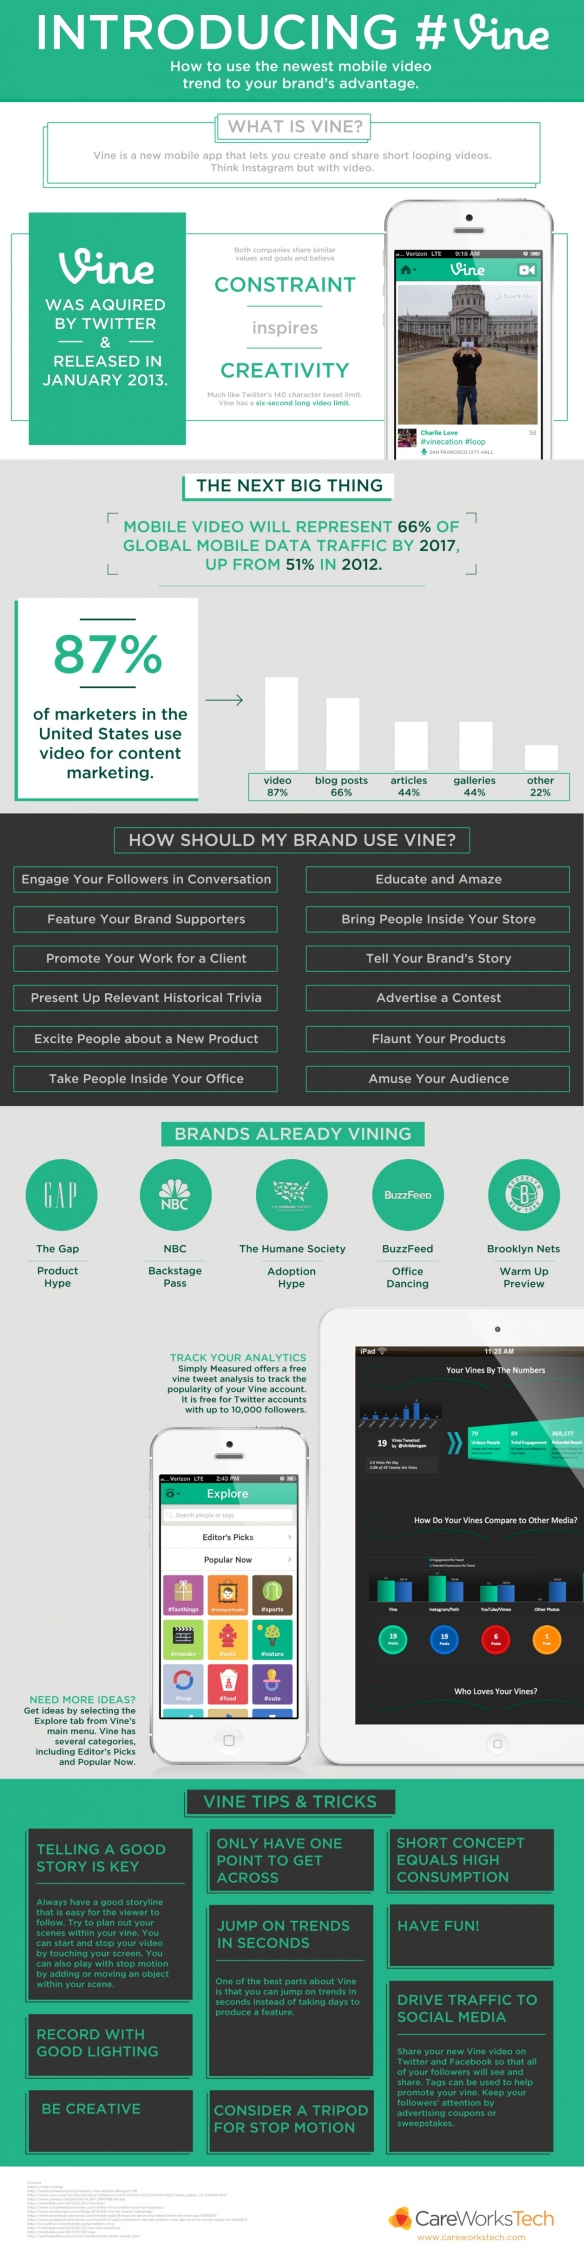 vine-infographic_1